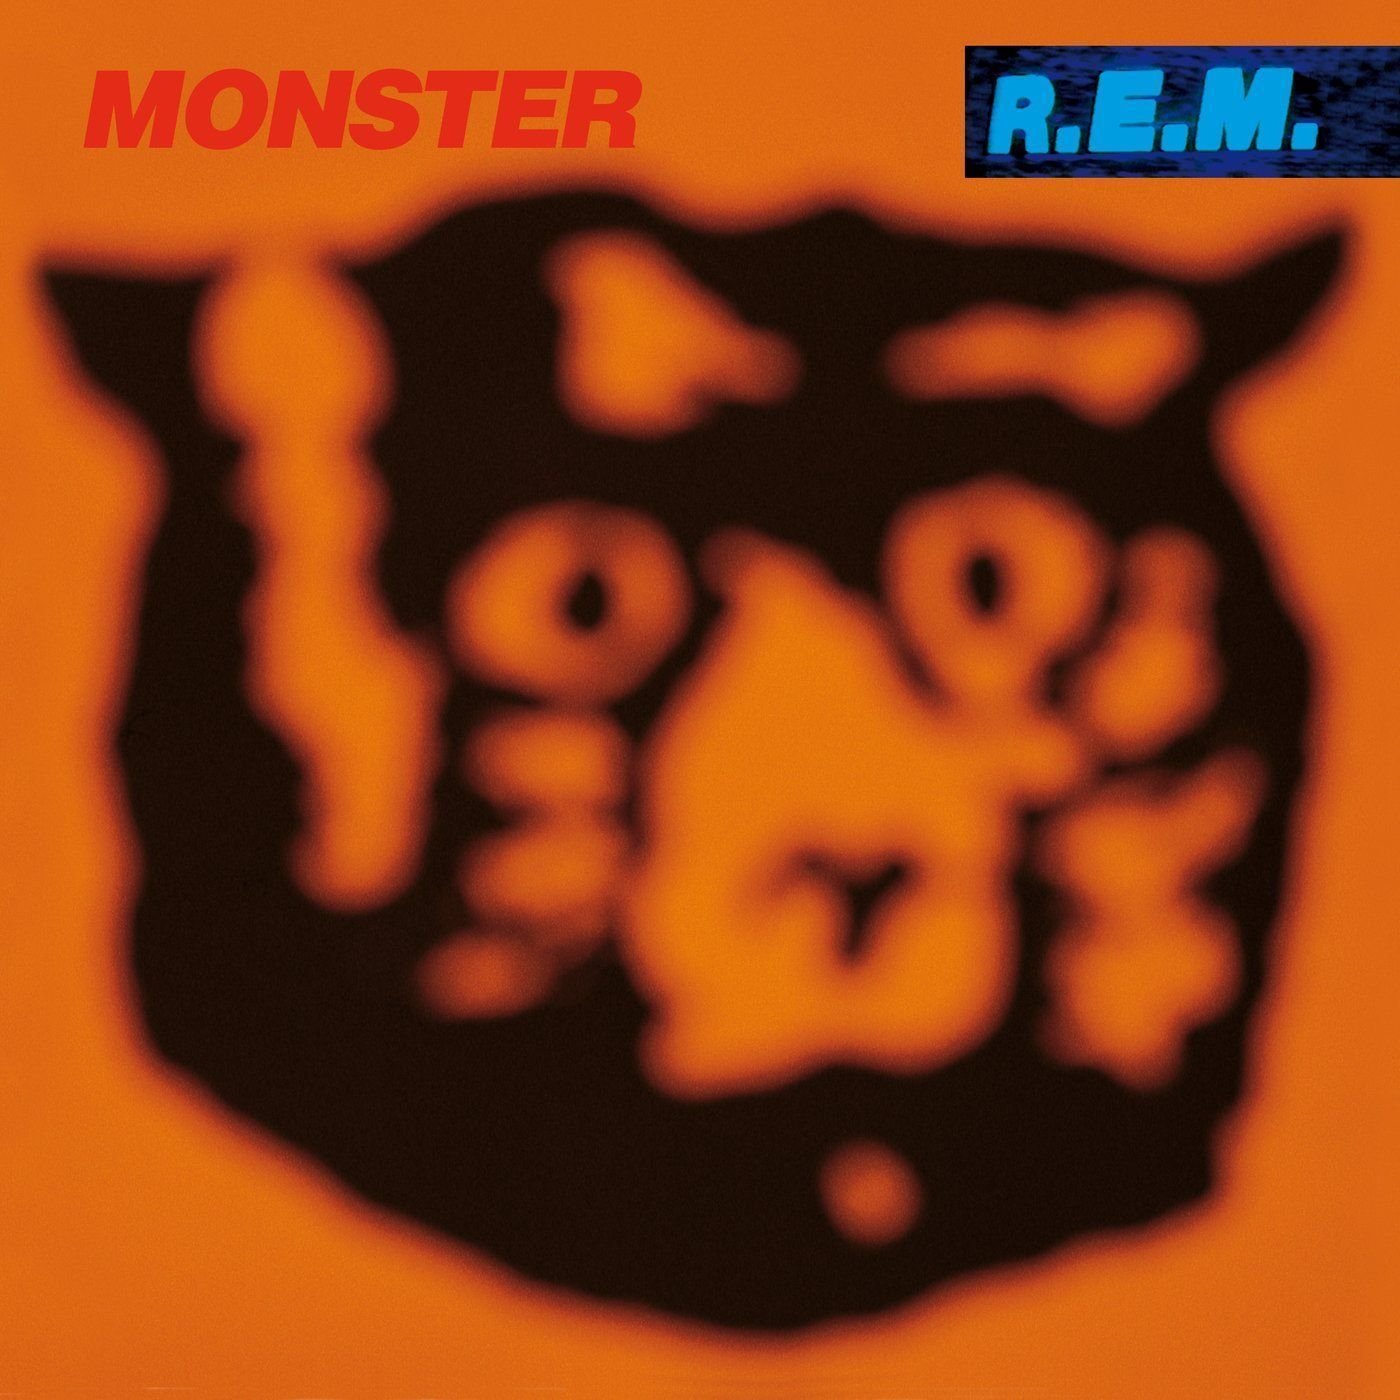 Vinyl Record R.E.M. - Monster (LP)